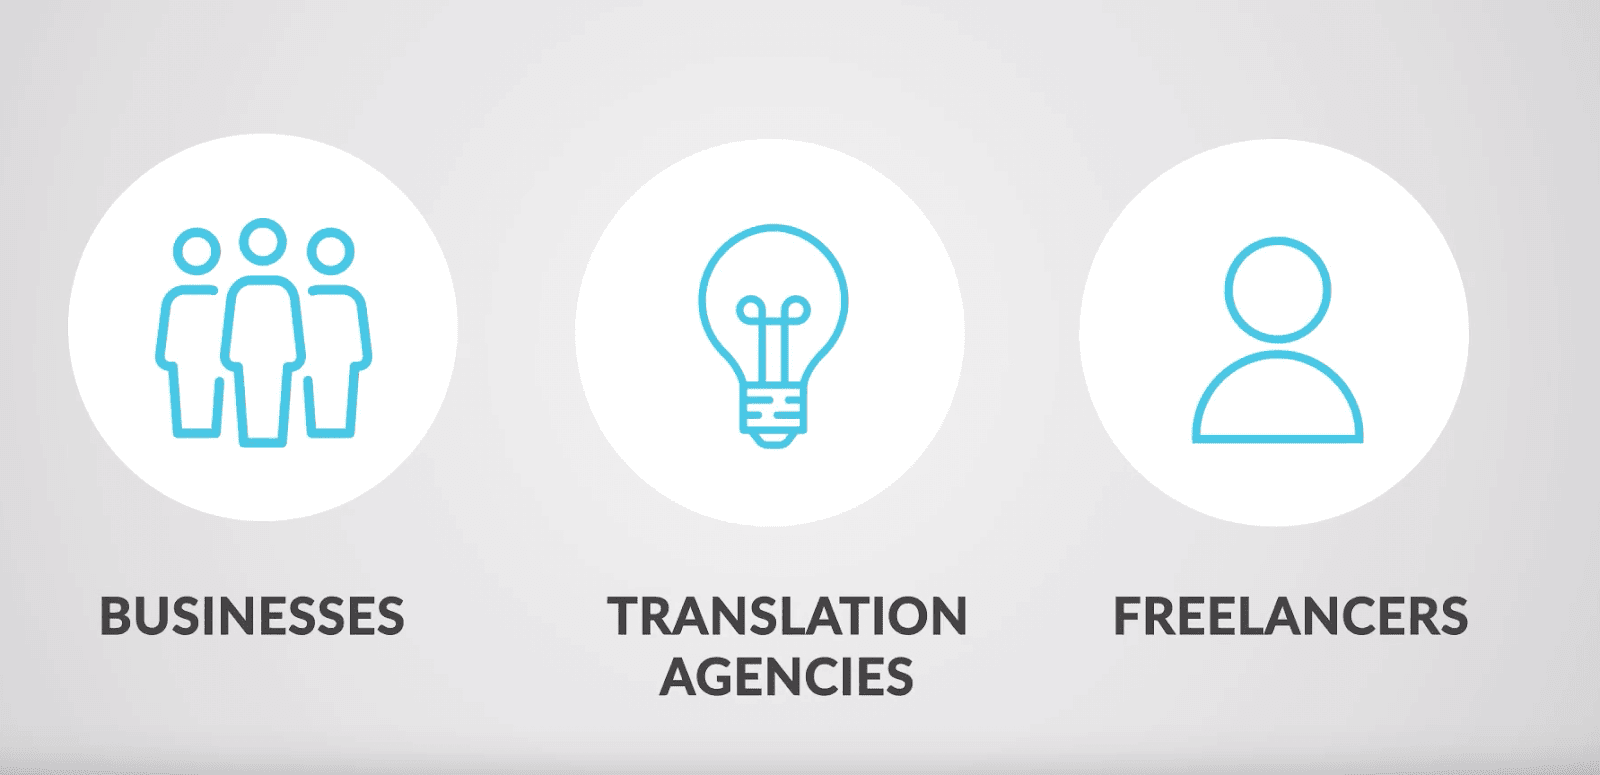 Top 3 translation management software programs in 2020